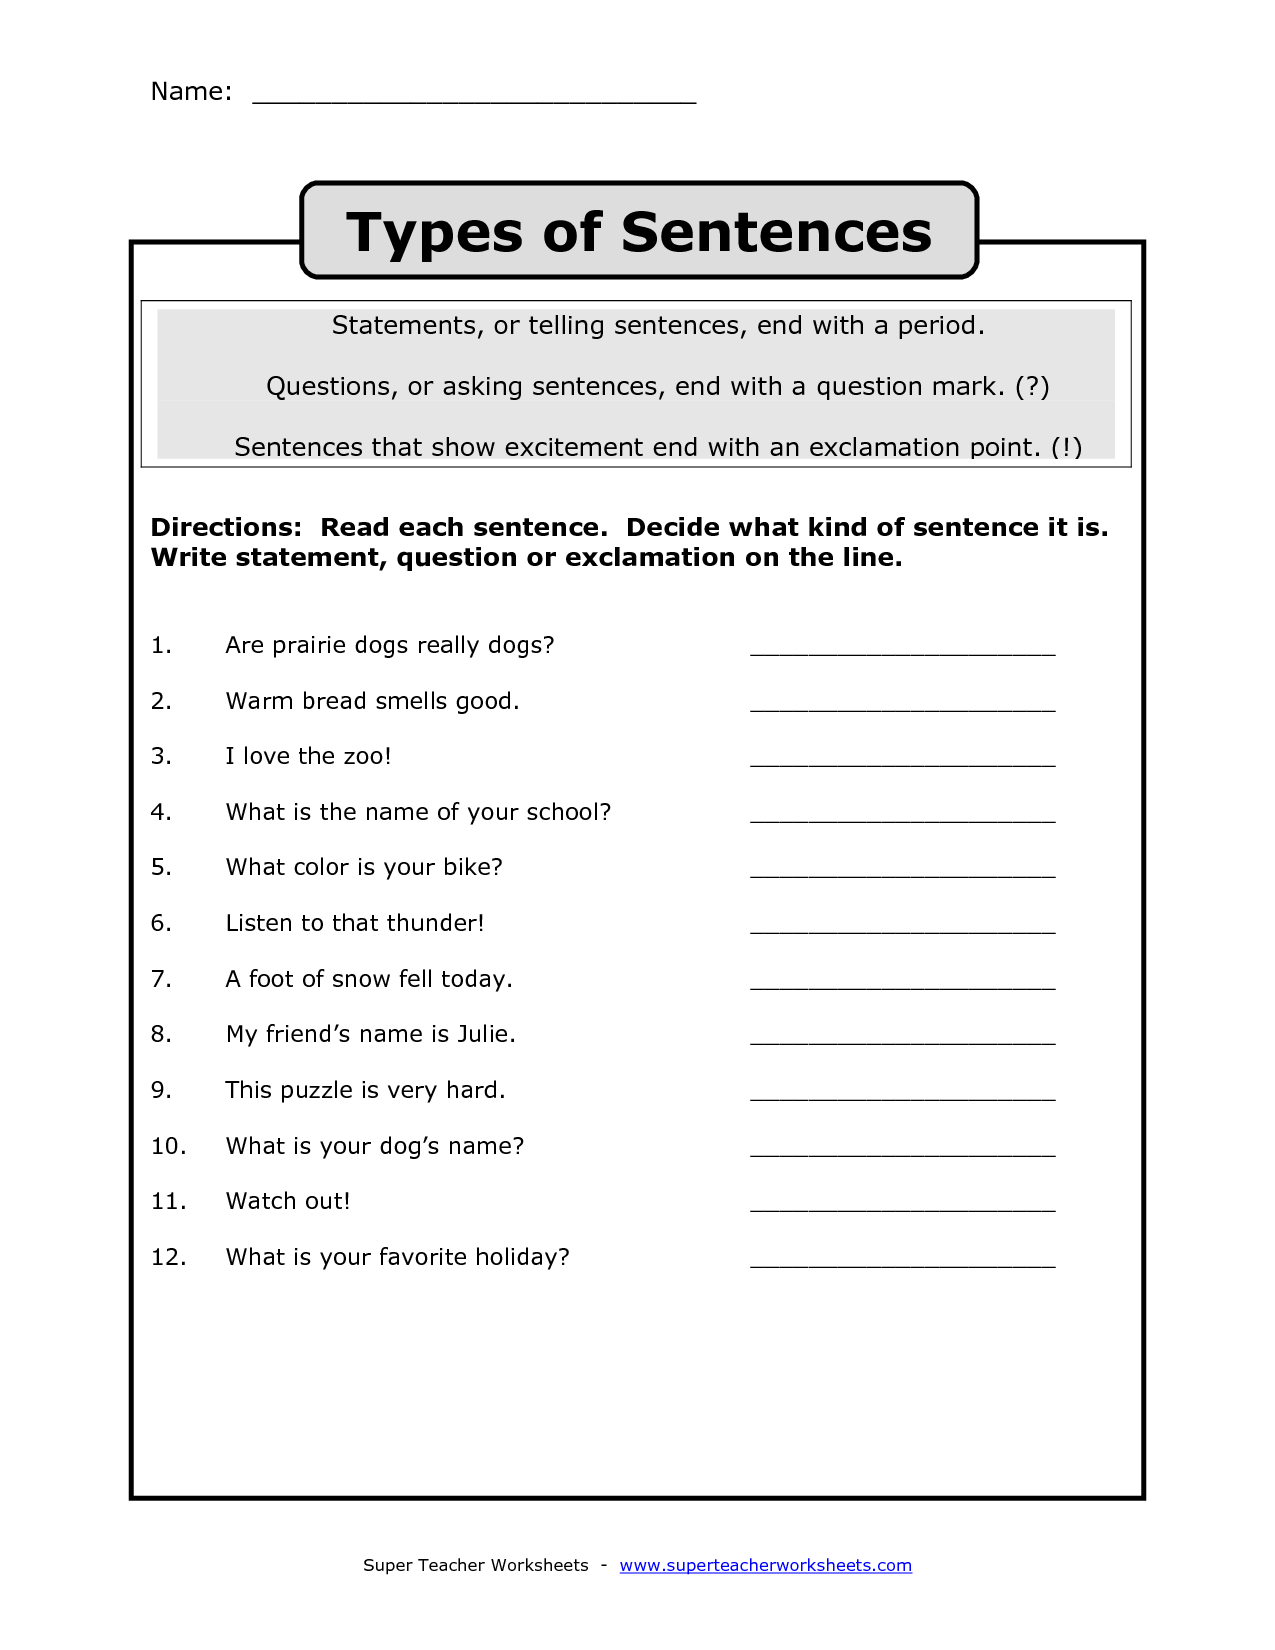 types-of-sentences-worksheet-have-fun-teaching-types-of-sentences-worksheet-types-of